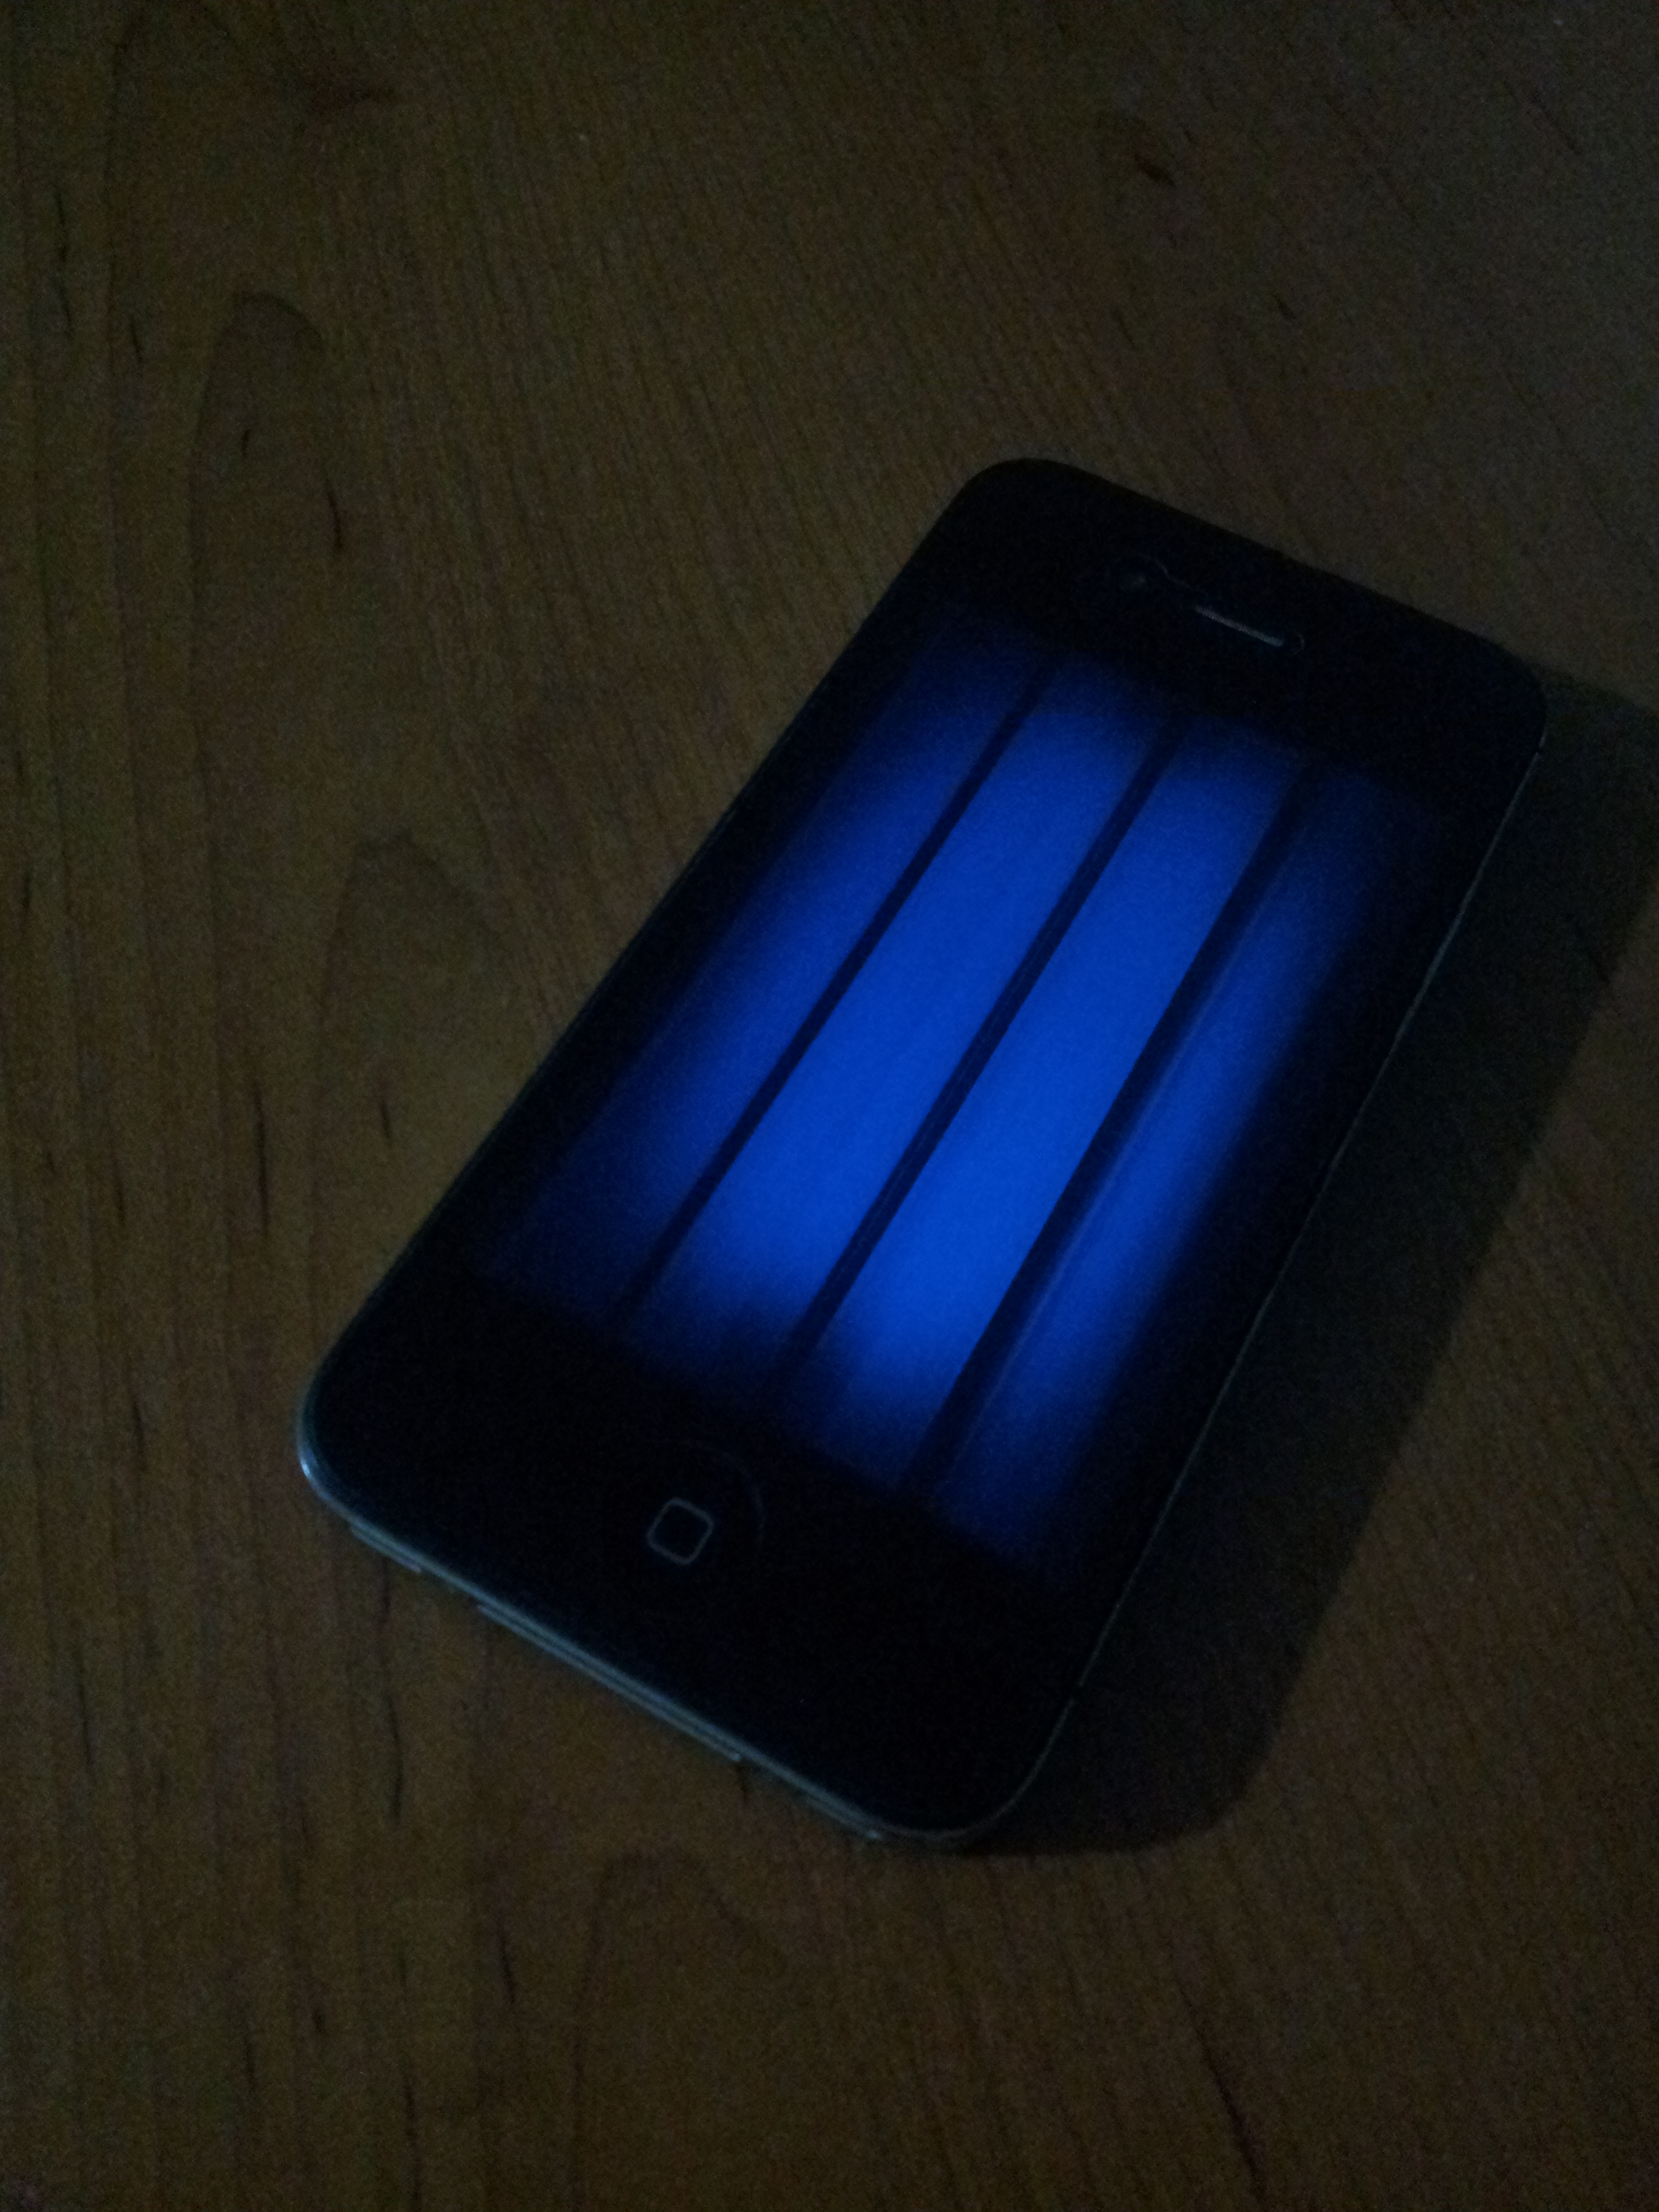  iPhone 4s dokunmatik çalışıyor ama ekrana görüntü gelmiyor.